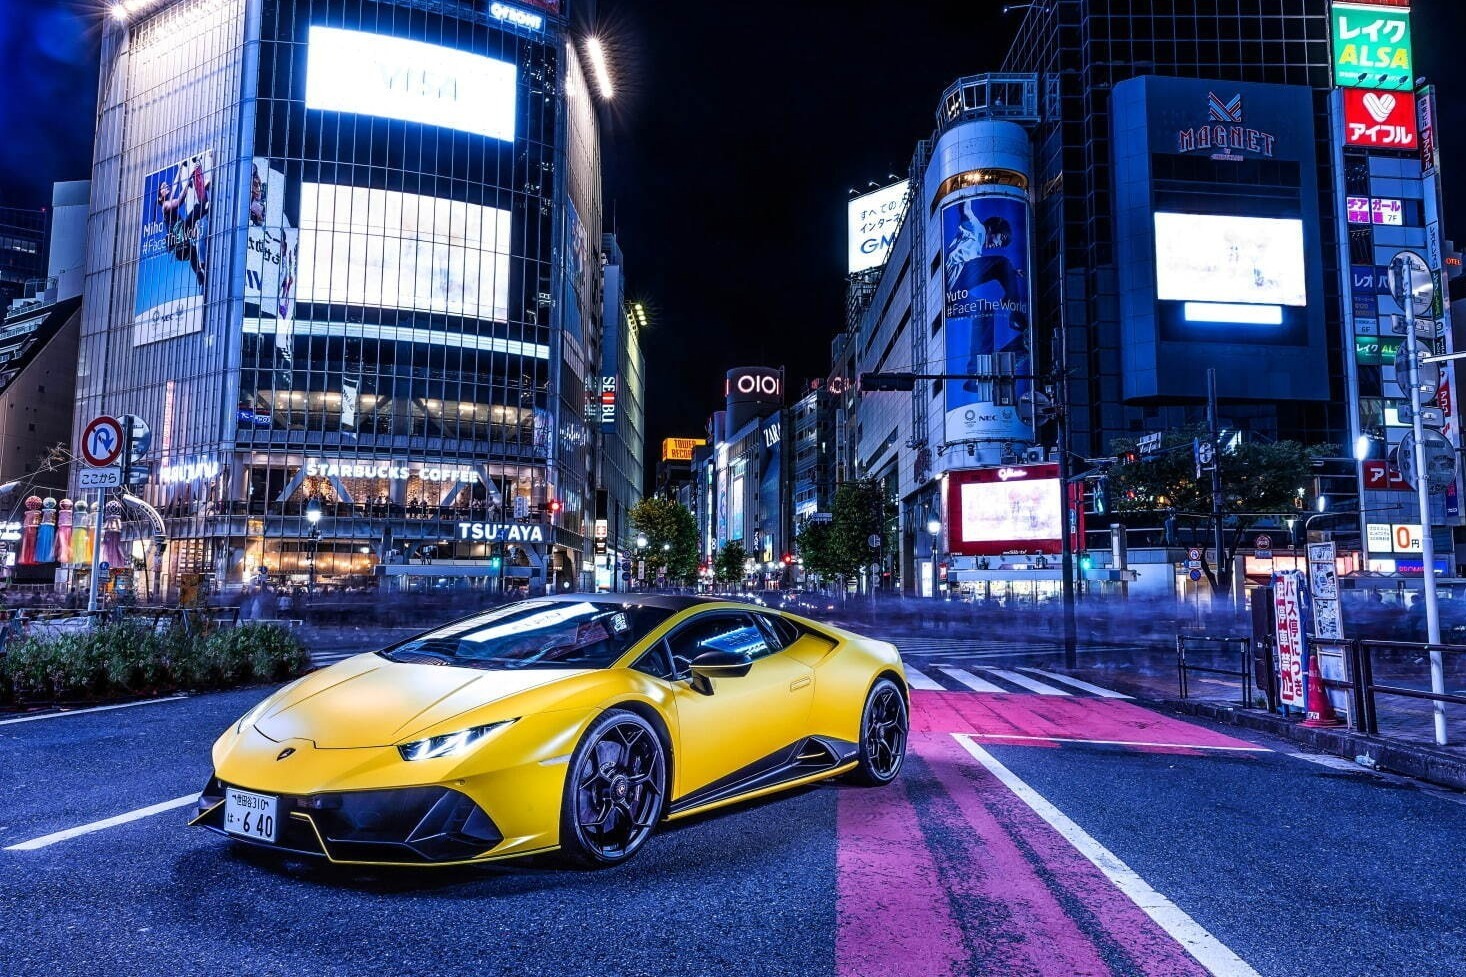 ランボルギーニのスーパースポーツカー“東京の夜景”を彩る大胆かつ